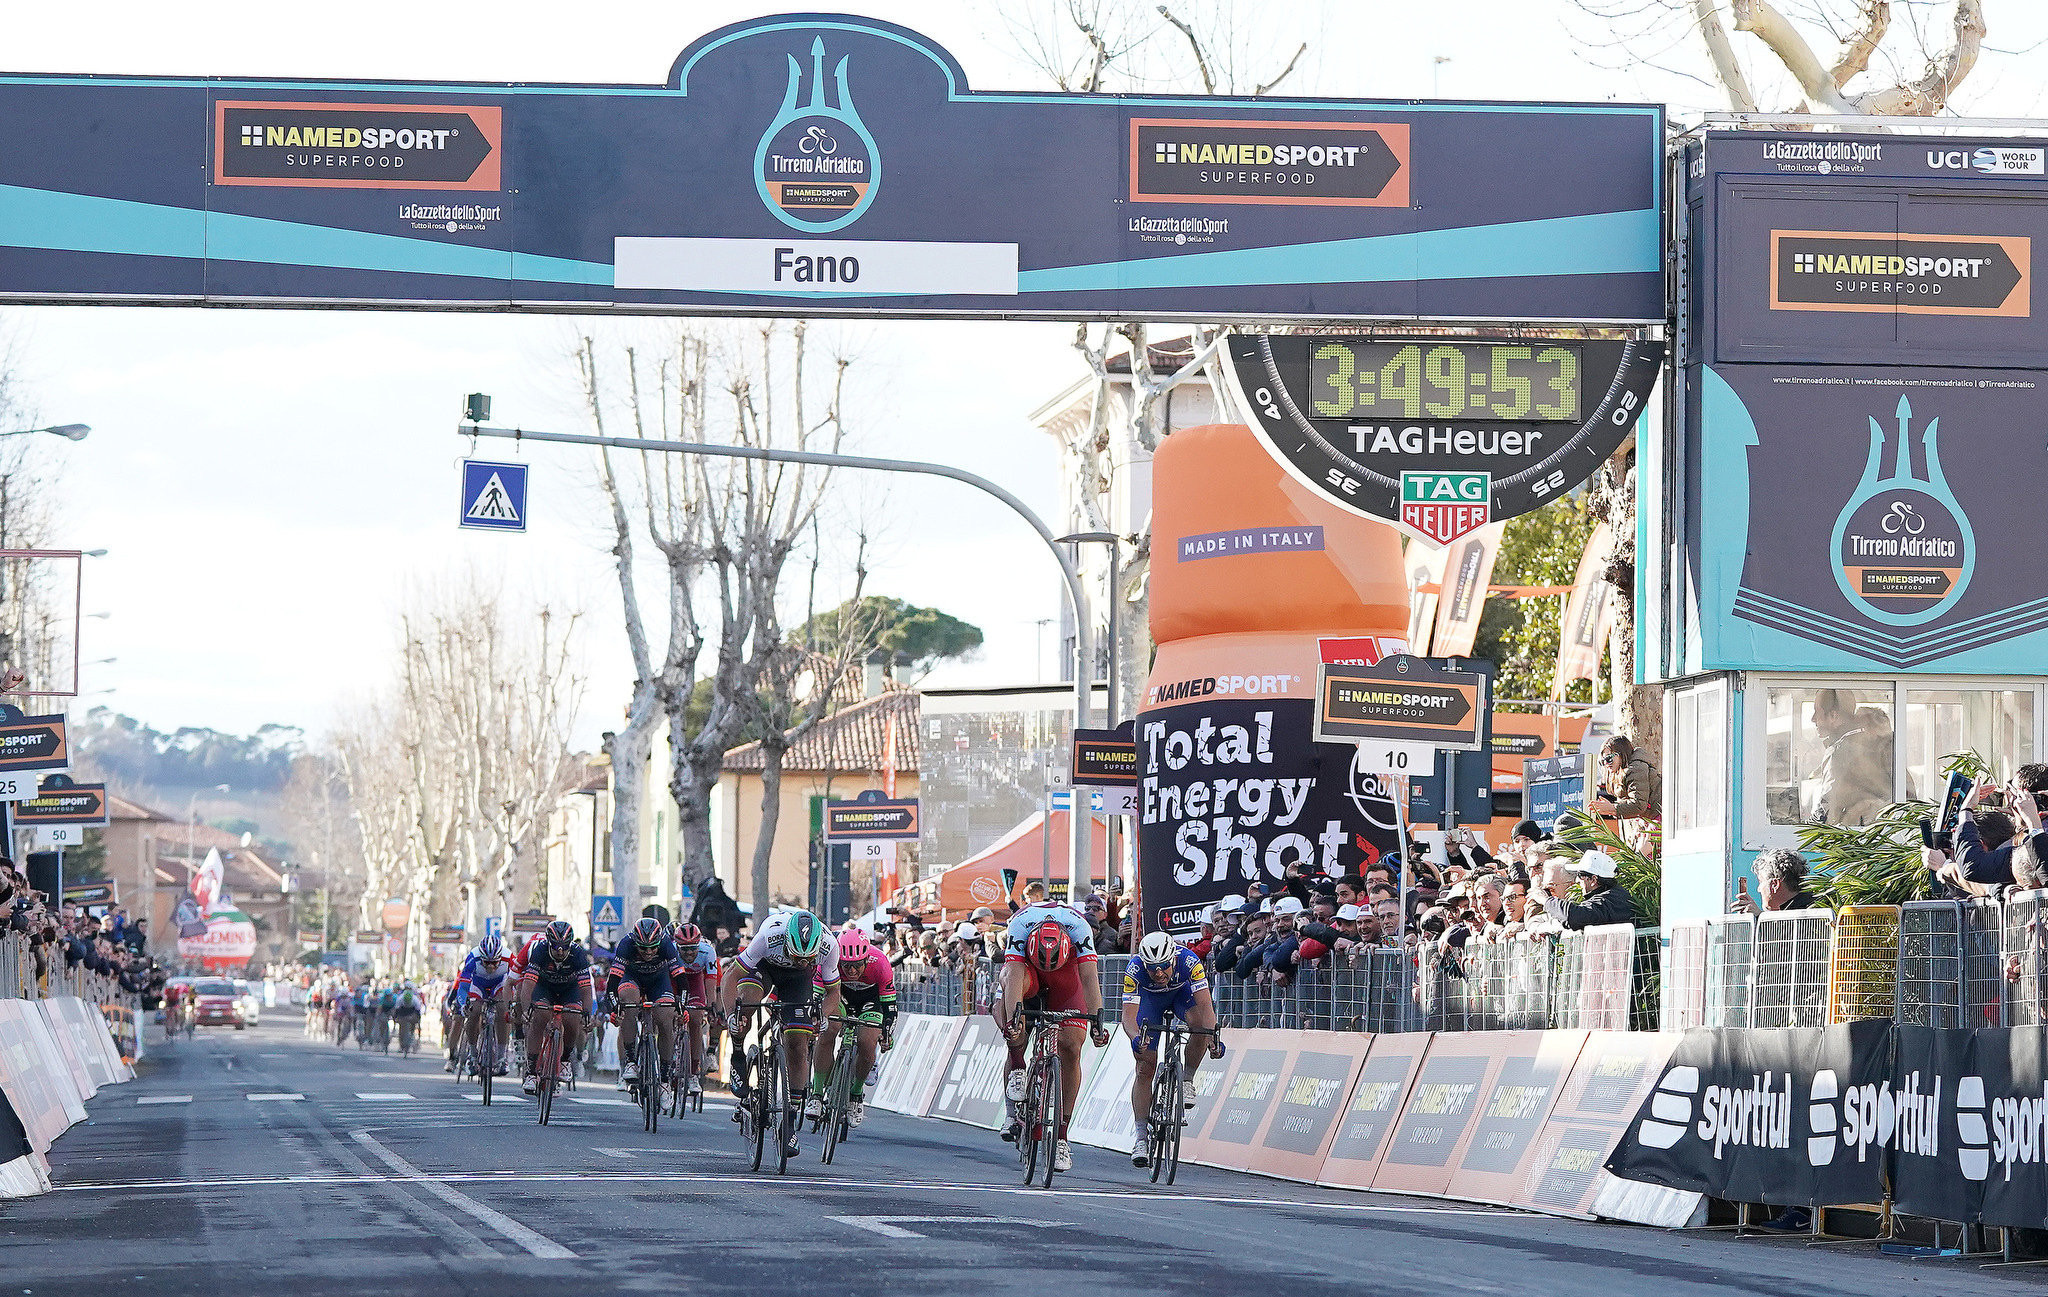 Marcel Kittel claimed sprint success in Fano ©LaPresse